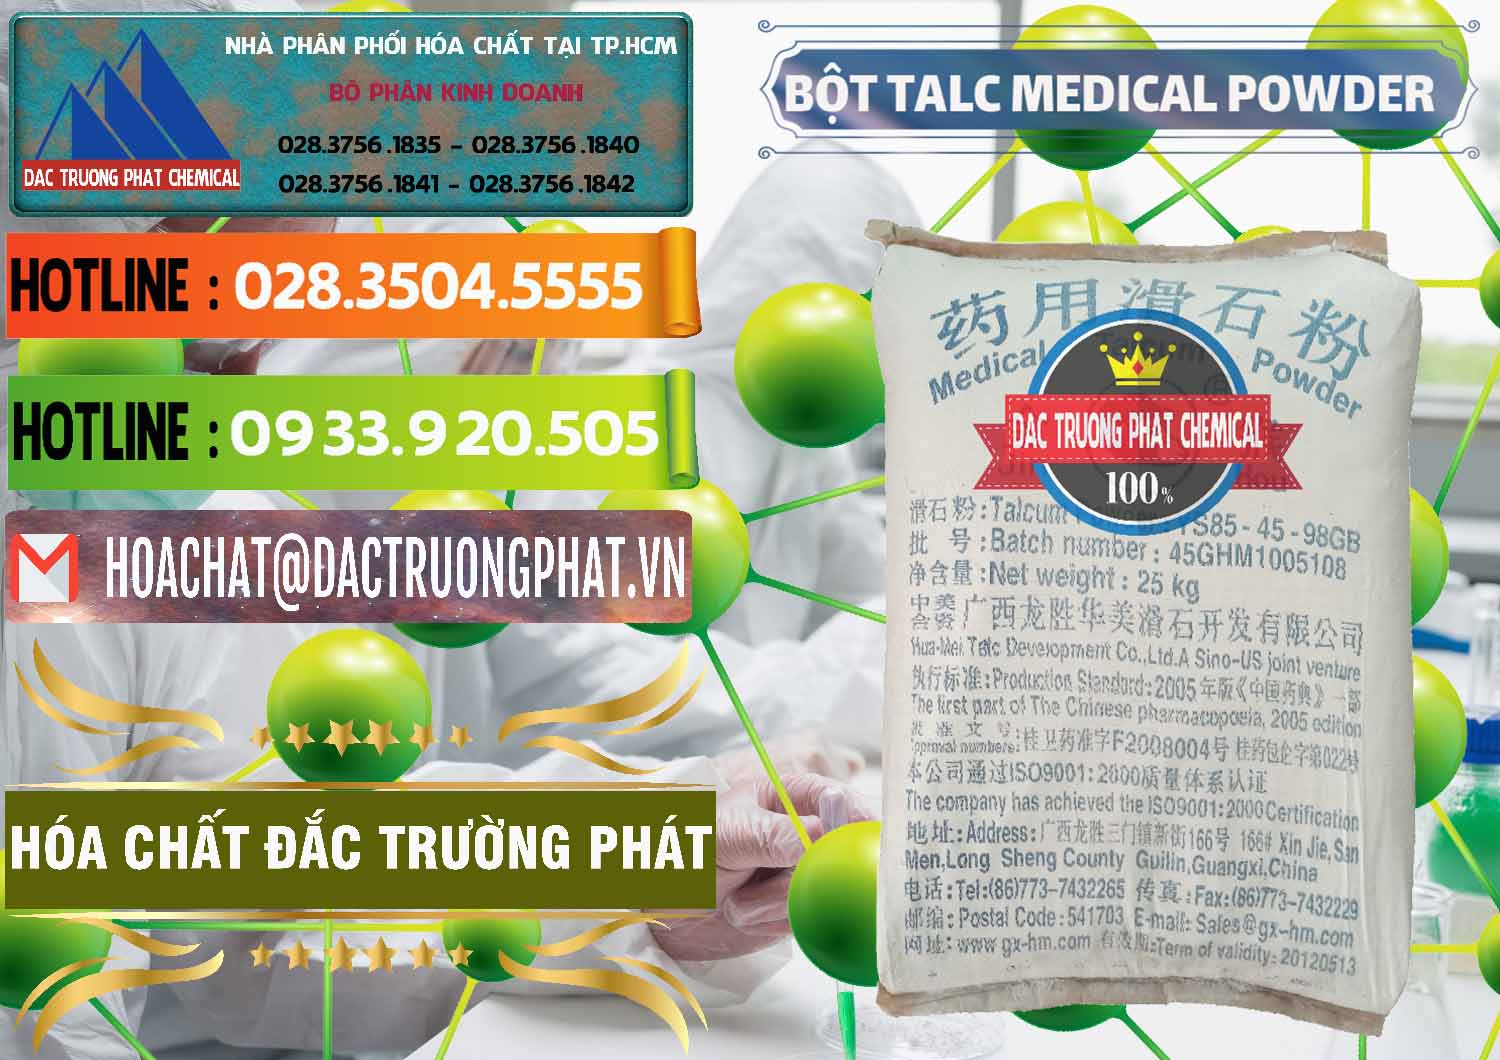 Cty phân phối ( bán ) Bột Talc Medical Powder Trung Quốc China - 0036 - Nơi chuyên bán và phân phối hóa chất tại TP.HCM - cungcaphoachat.com.vn